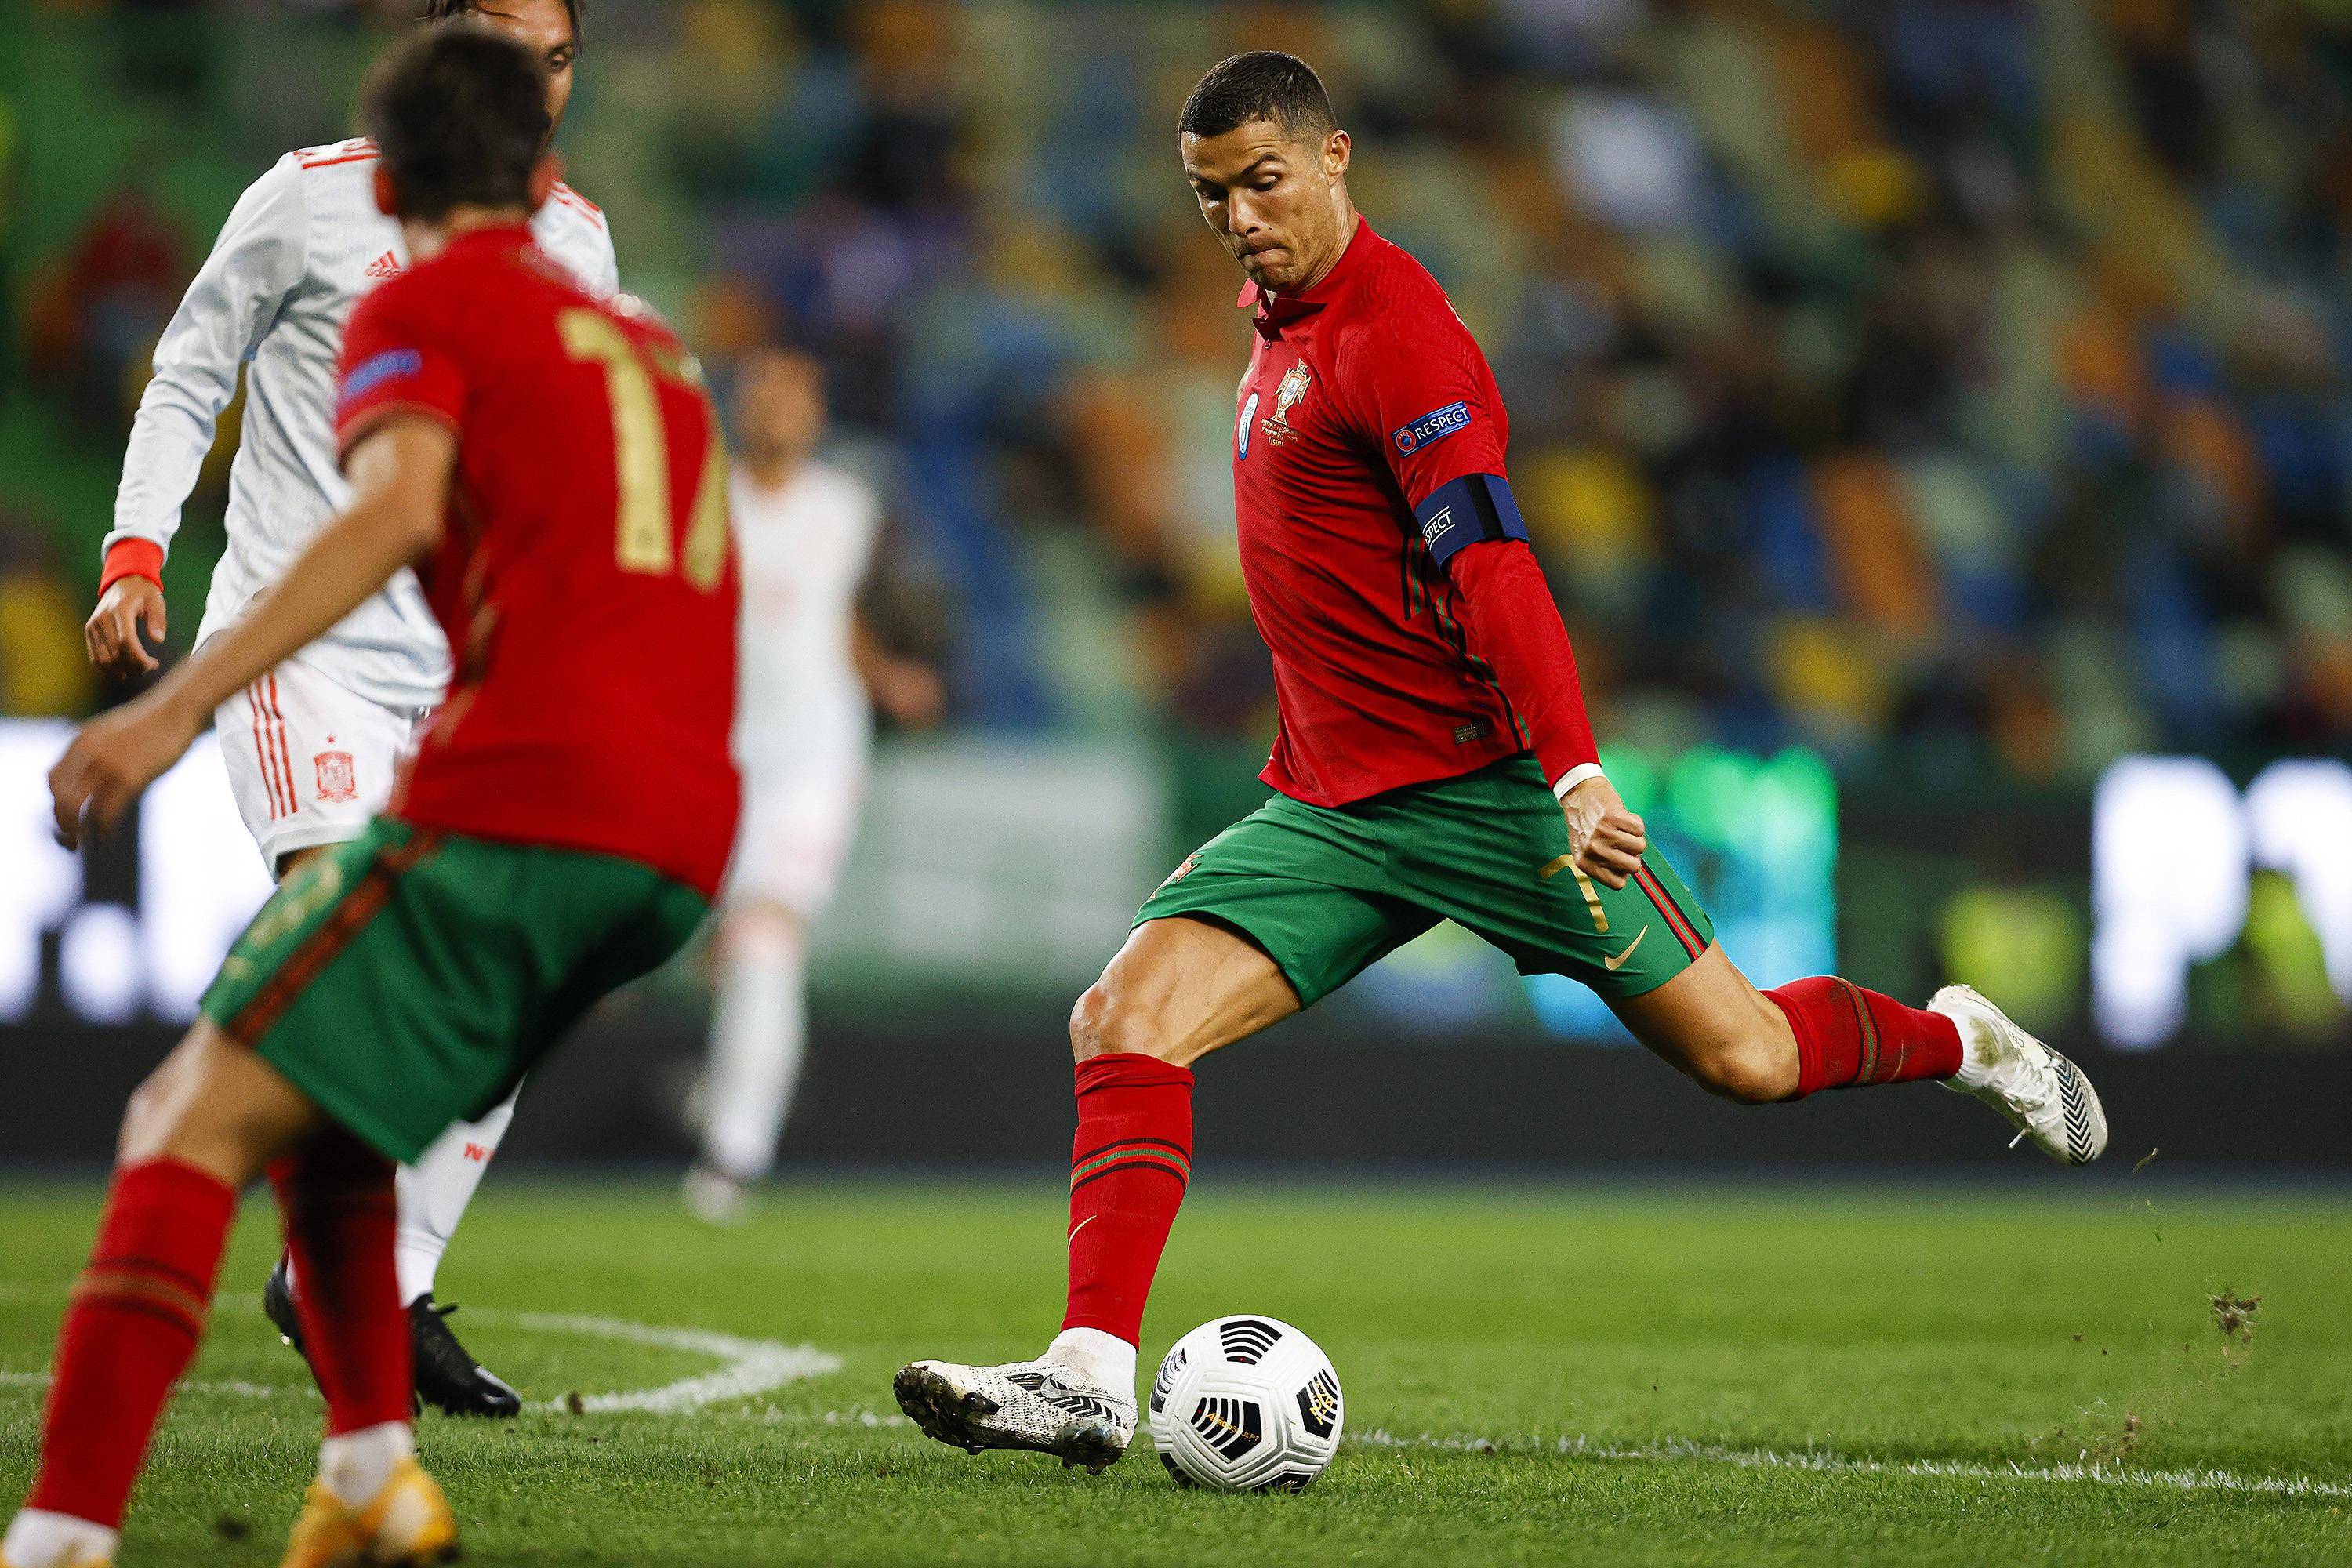 难上加难,附加赛葡萄牙压力山大,c罗能否圆梦世界杯?